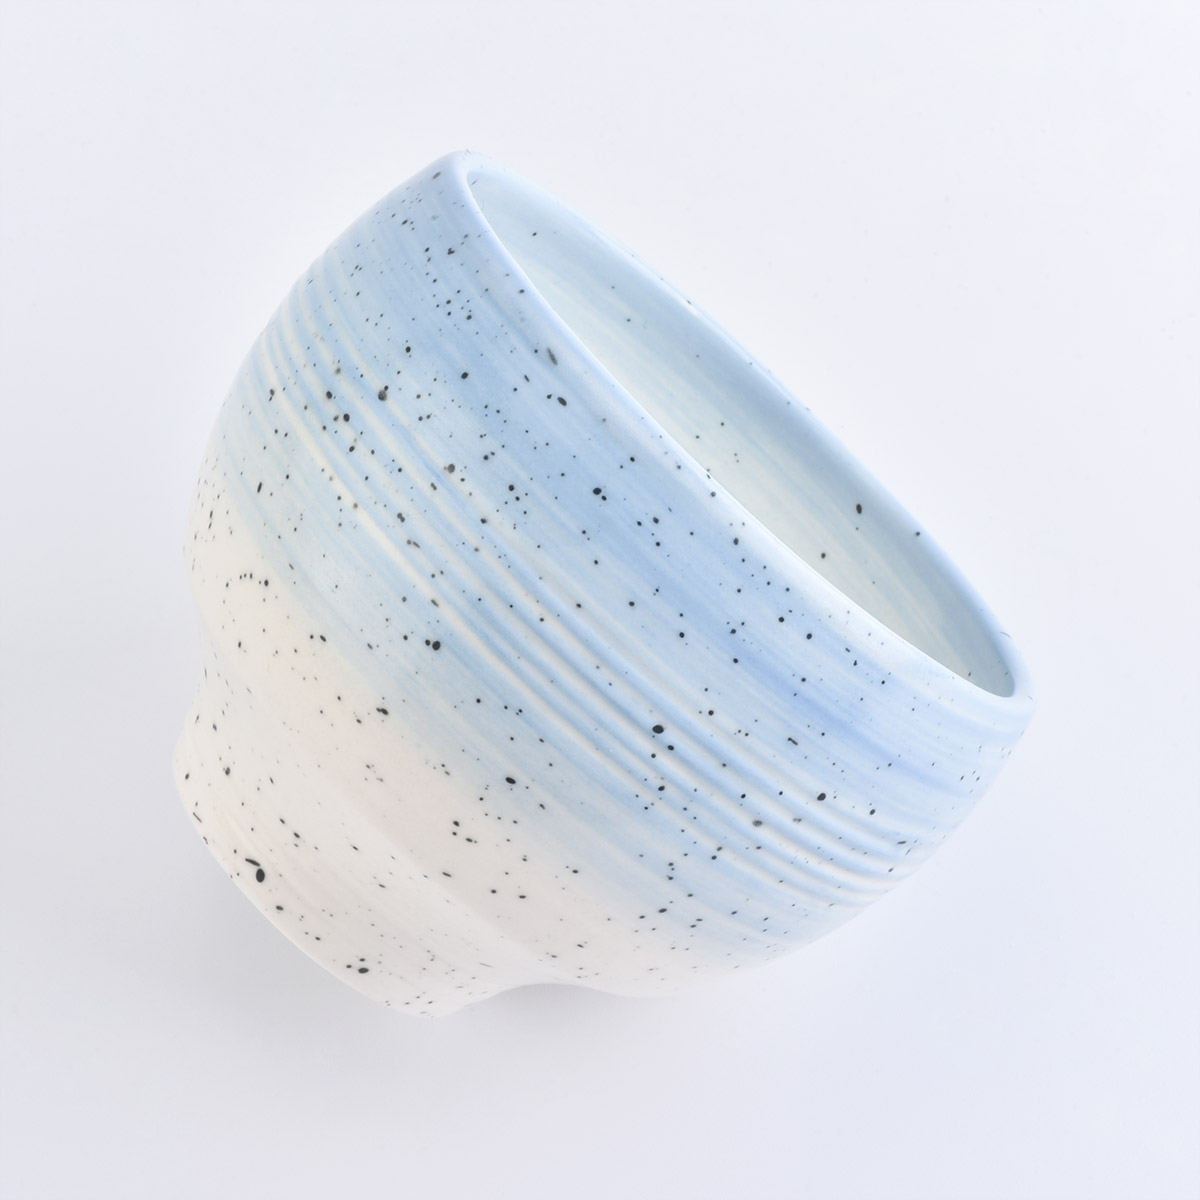 wadah lilin keramik unik partai besar putih dan biru